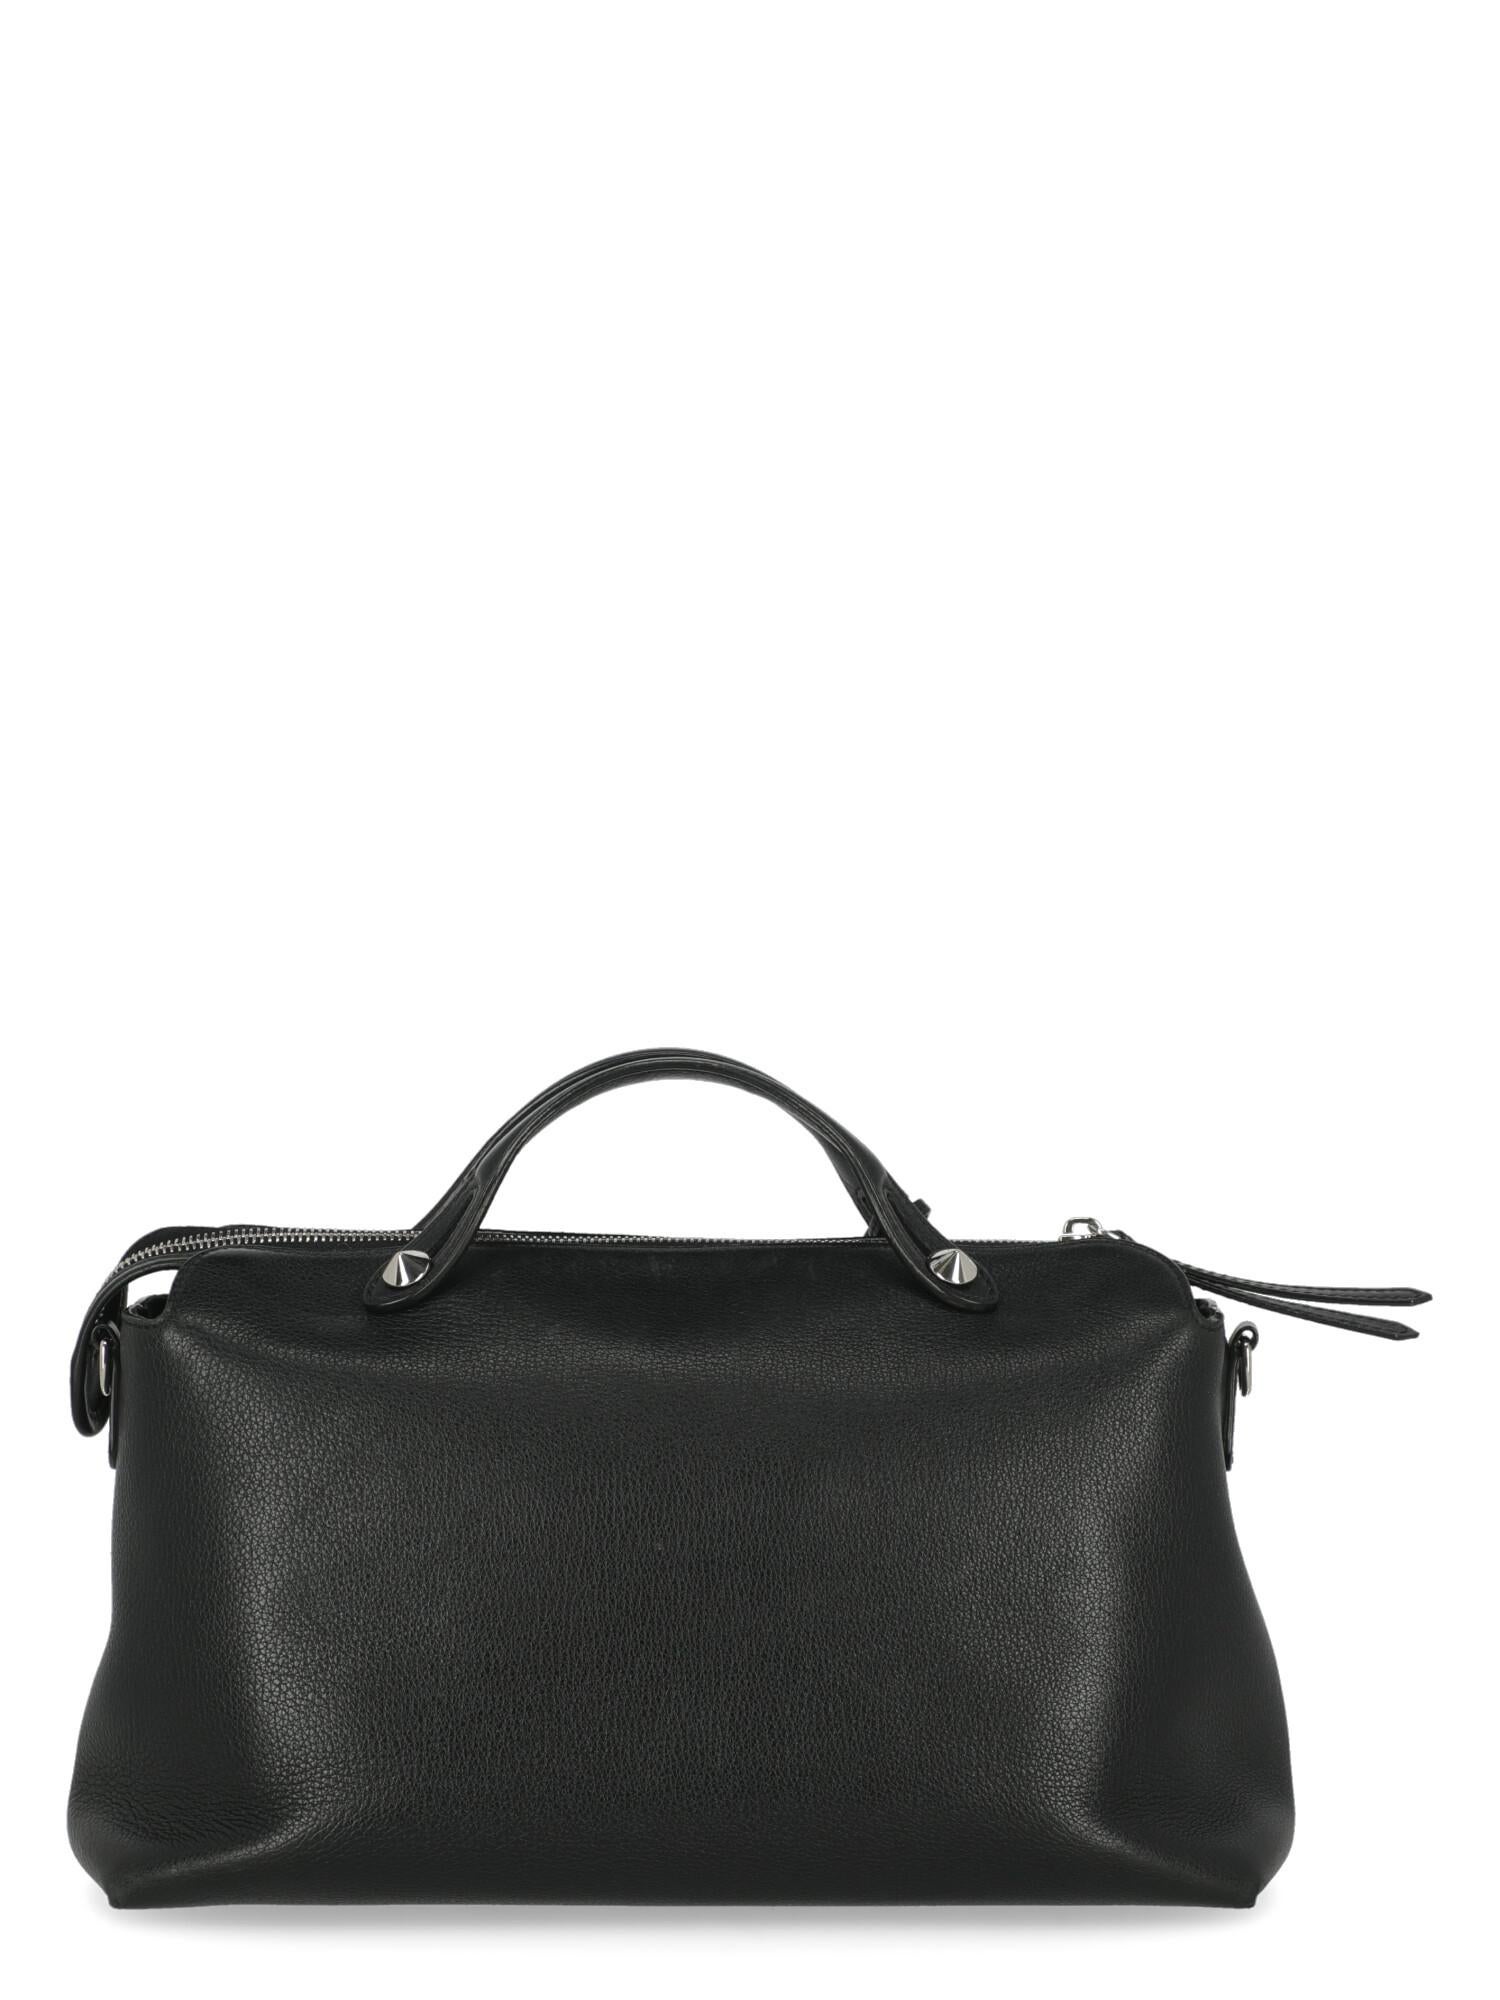 Women's Fendi Women  Handbags By The Way Black Leather For Sale